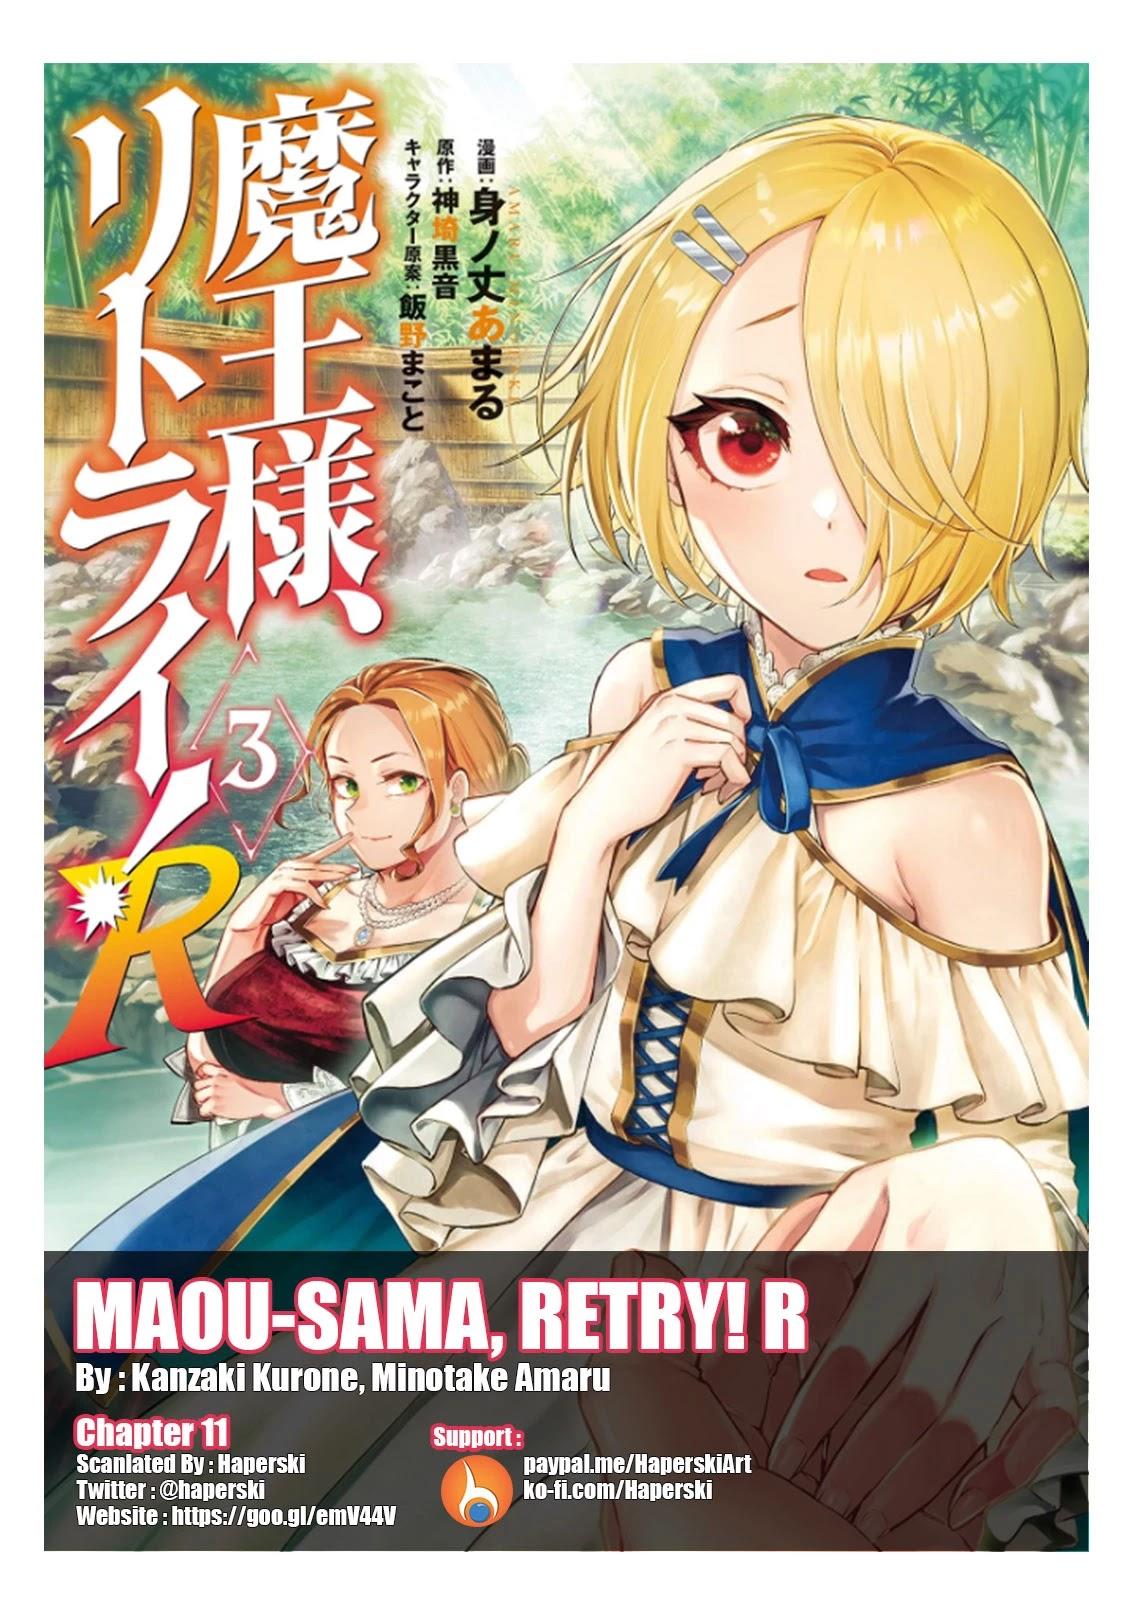 Read Maou-Sama Retry Vol.5 Chapter 23: White Light on Mangakakalot